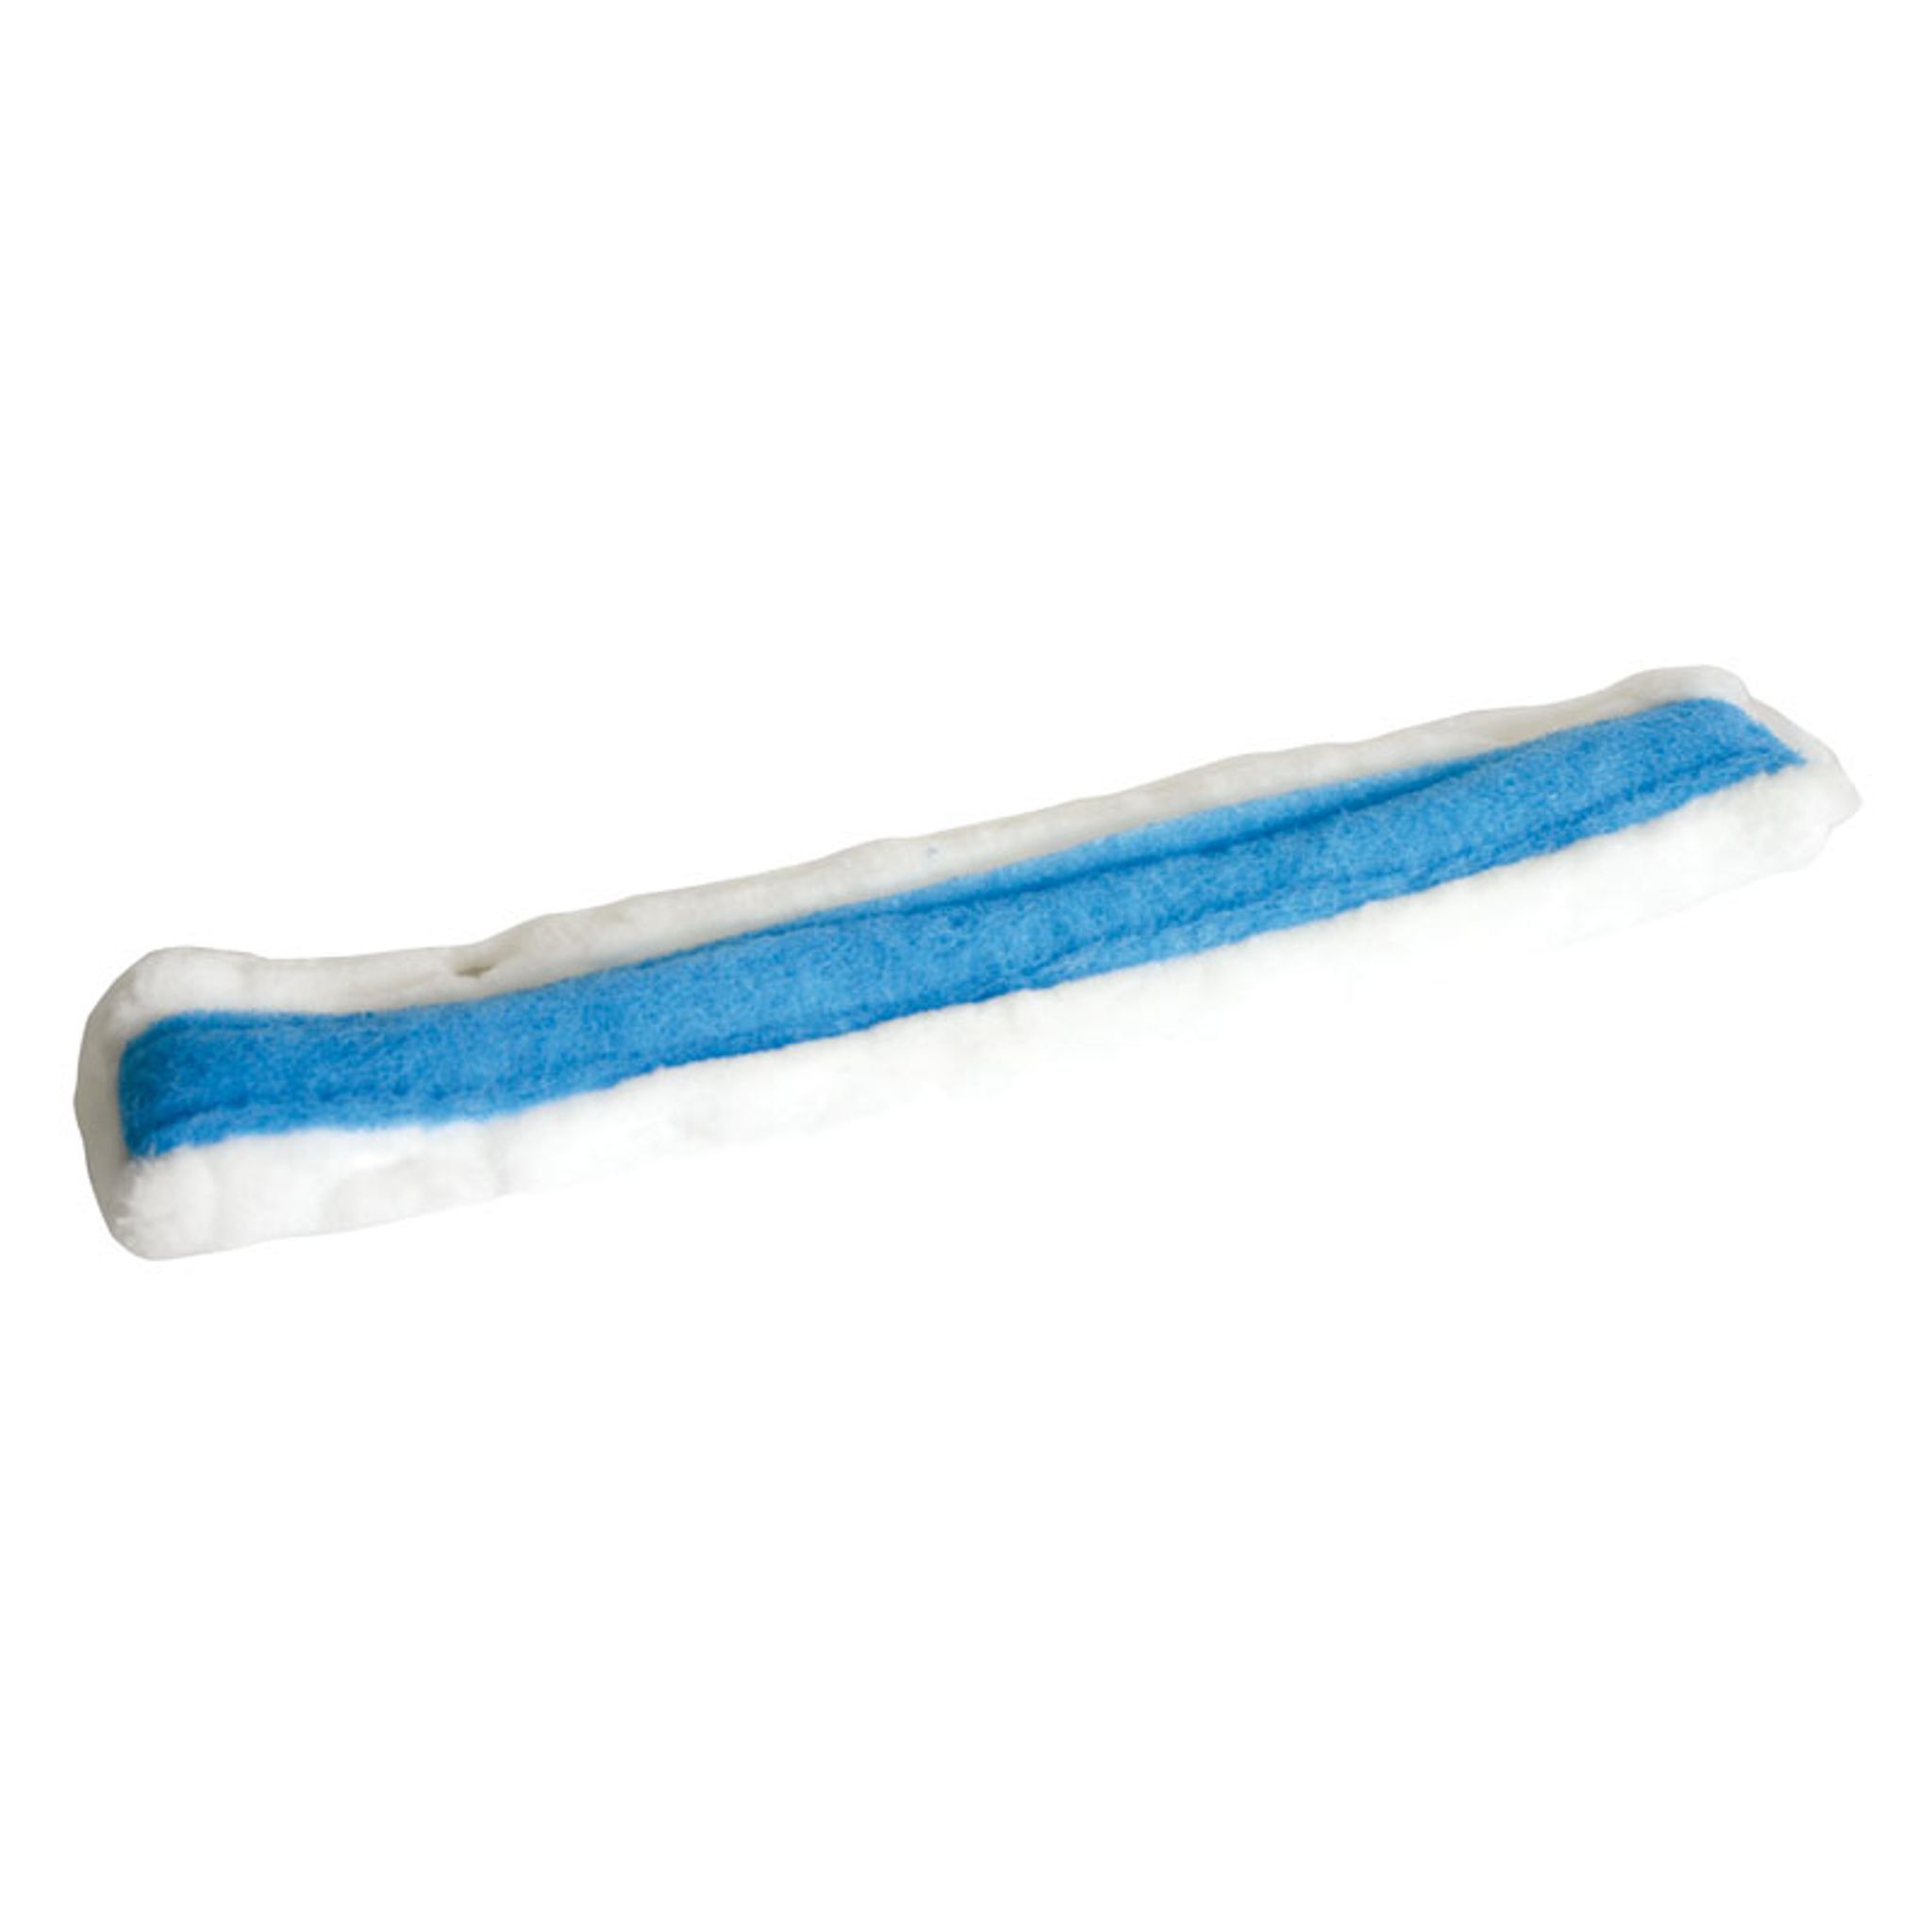 Nakładka do myjki do okien z niebieskim paskiem, 35 cm (5 szt.)